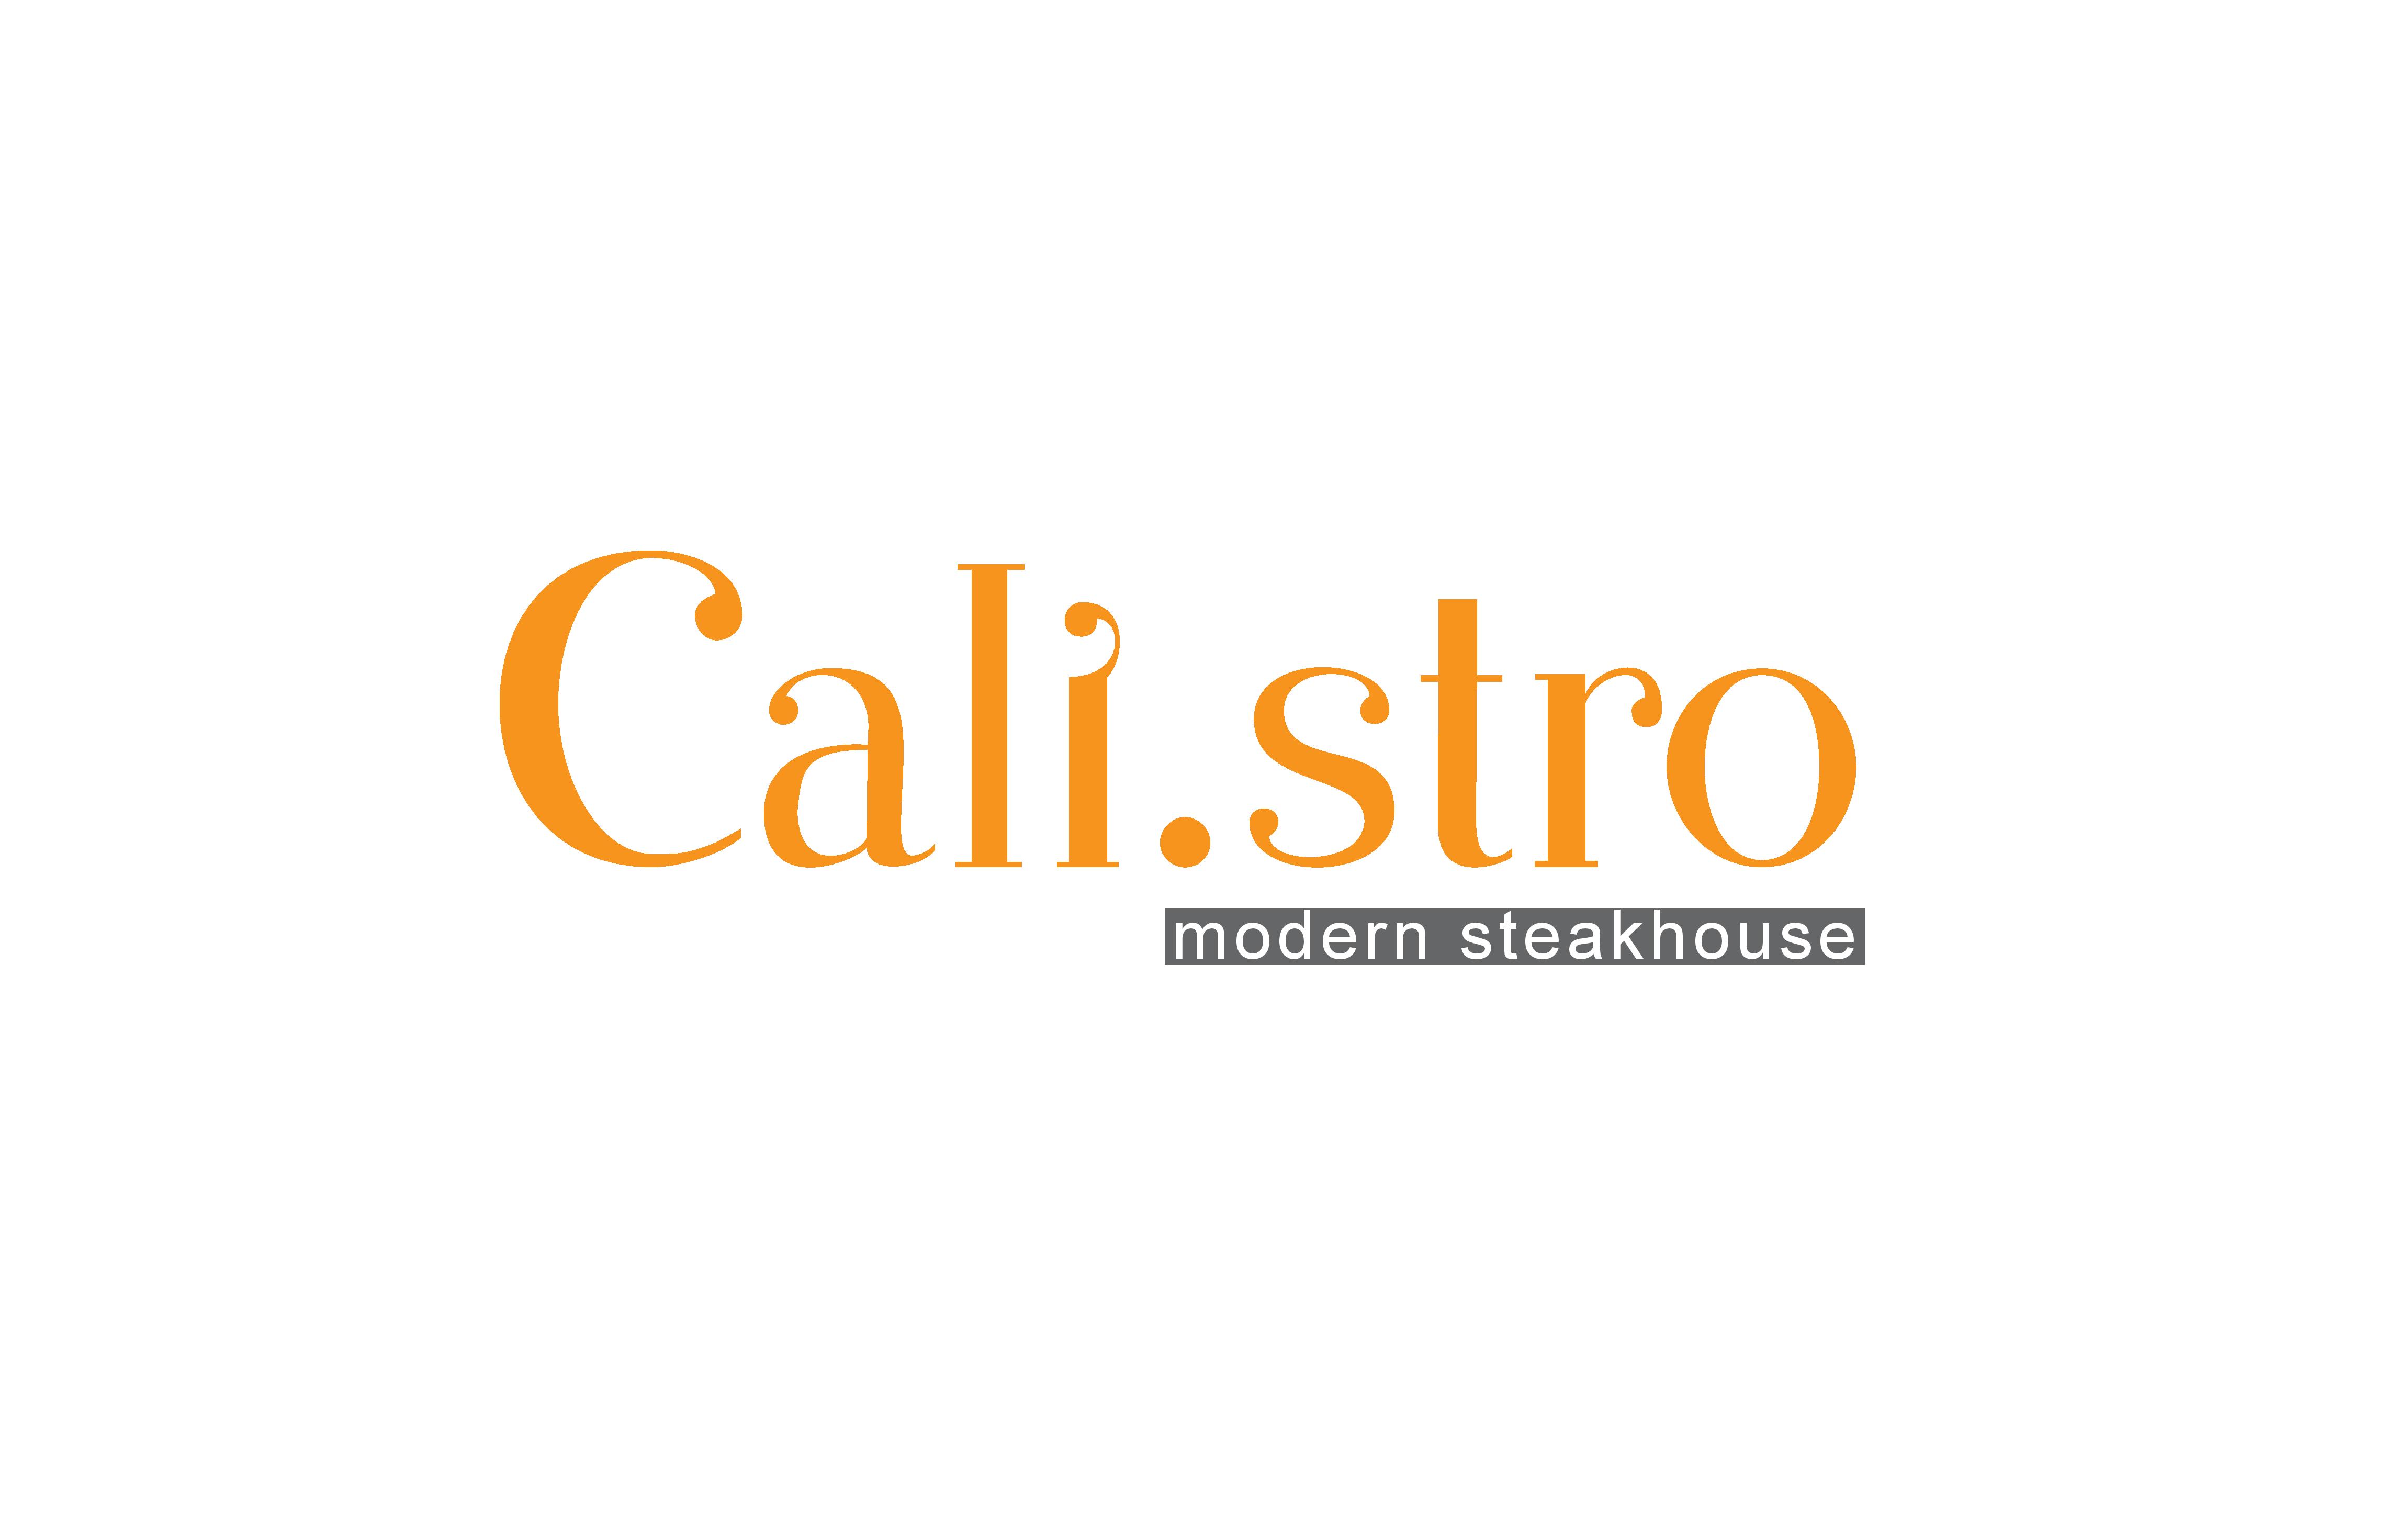 Logo Cali.stro